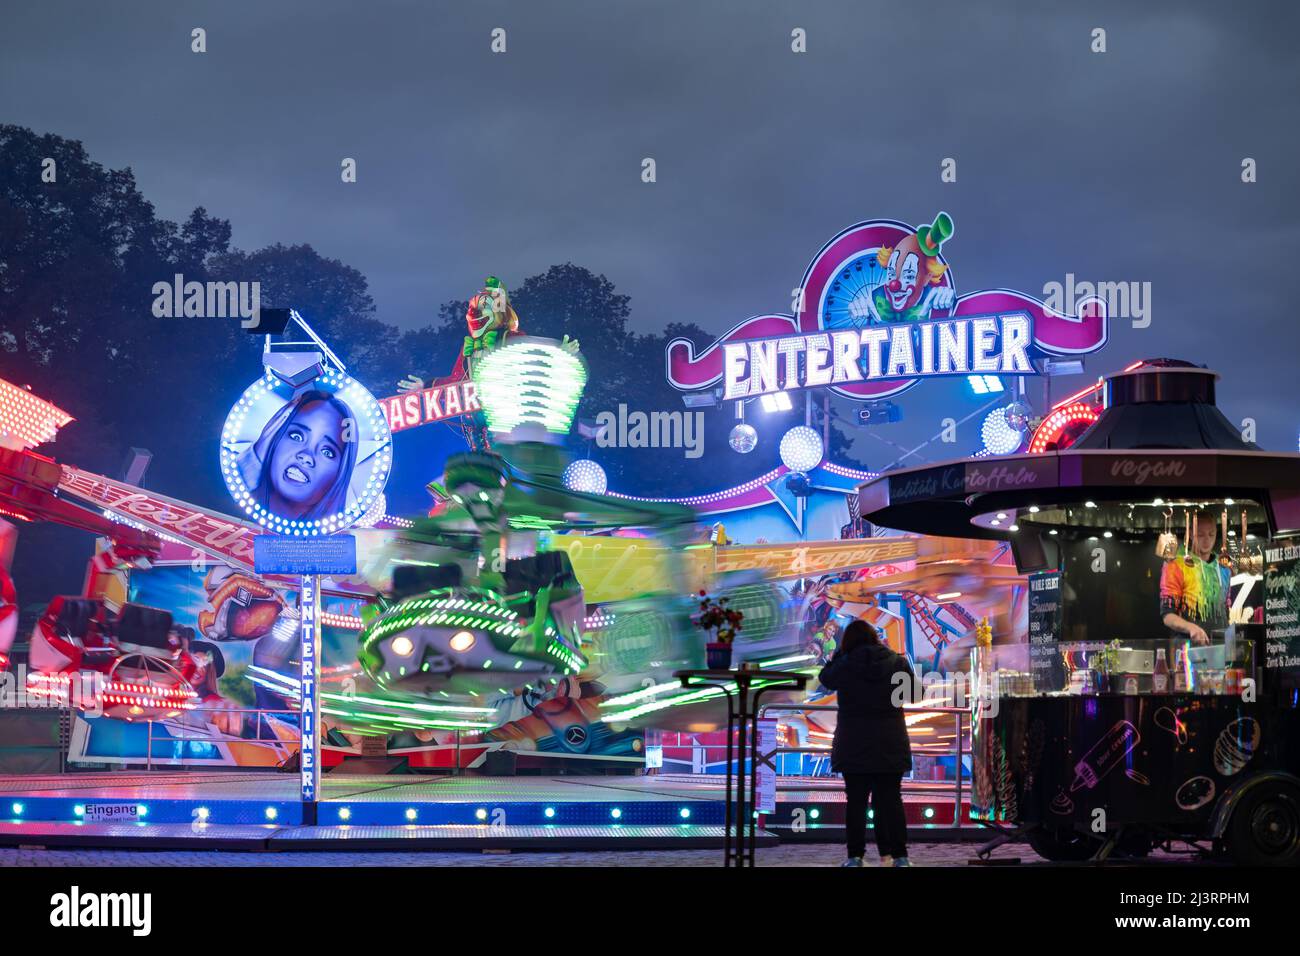 Entertainer-Funfair-Fahrt mit einem großen beleuchteten Logo am Abend. Die Fahrt auf dem Messegelände dreht sich sehr schnell. Freizeitaktivitäten in Deutschland. Stockfoto